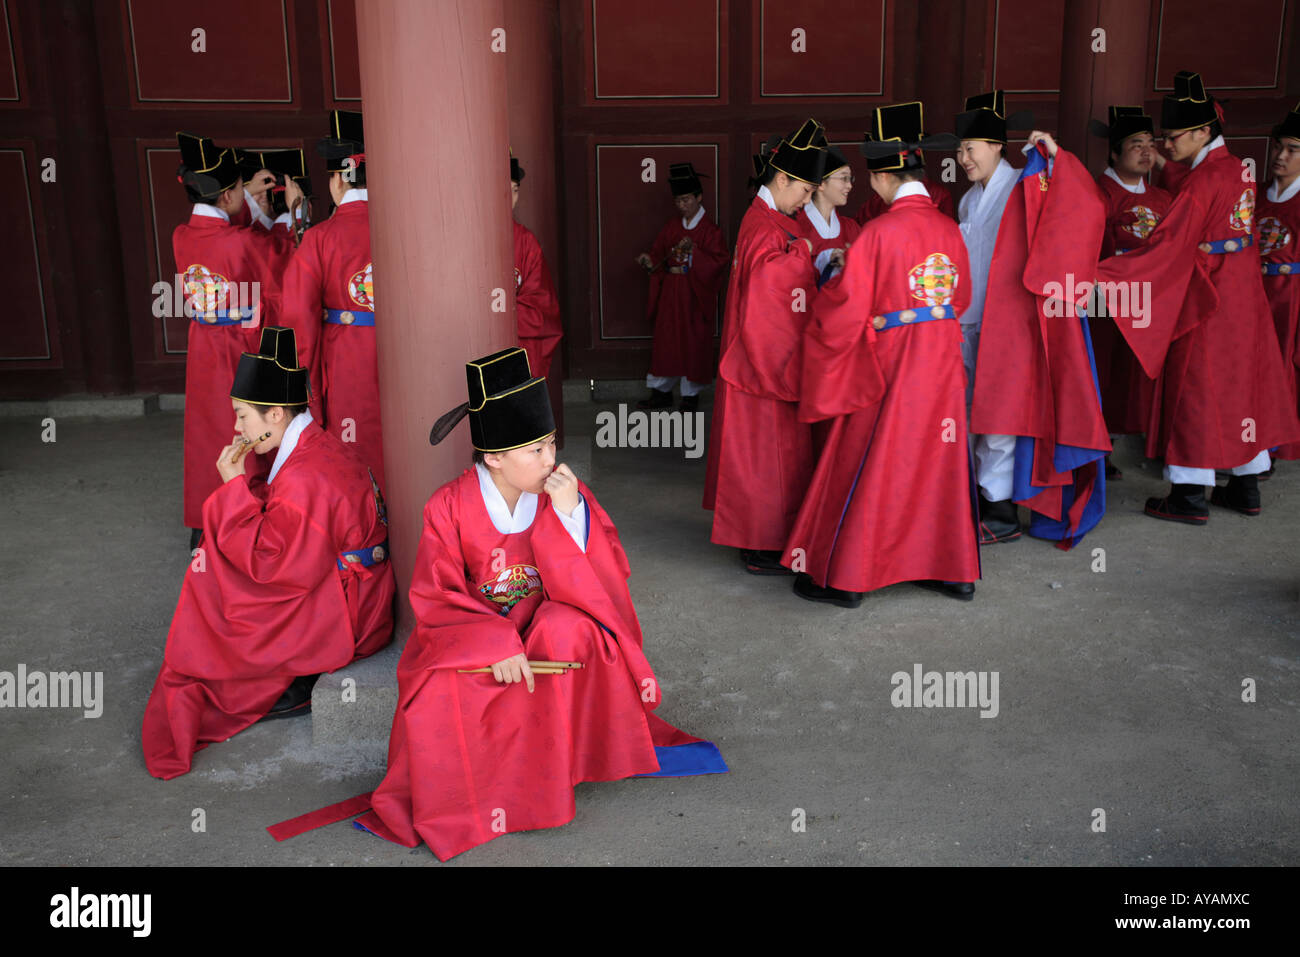 Corea del Sur: Seúl actores en trajes de época histórica prepararse para volver promulgación de procesión real en Changgyeonggung uno cinco Foto de stock